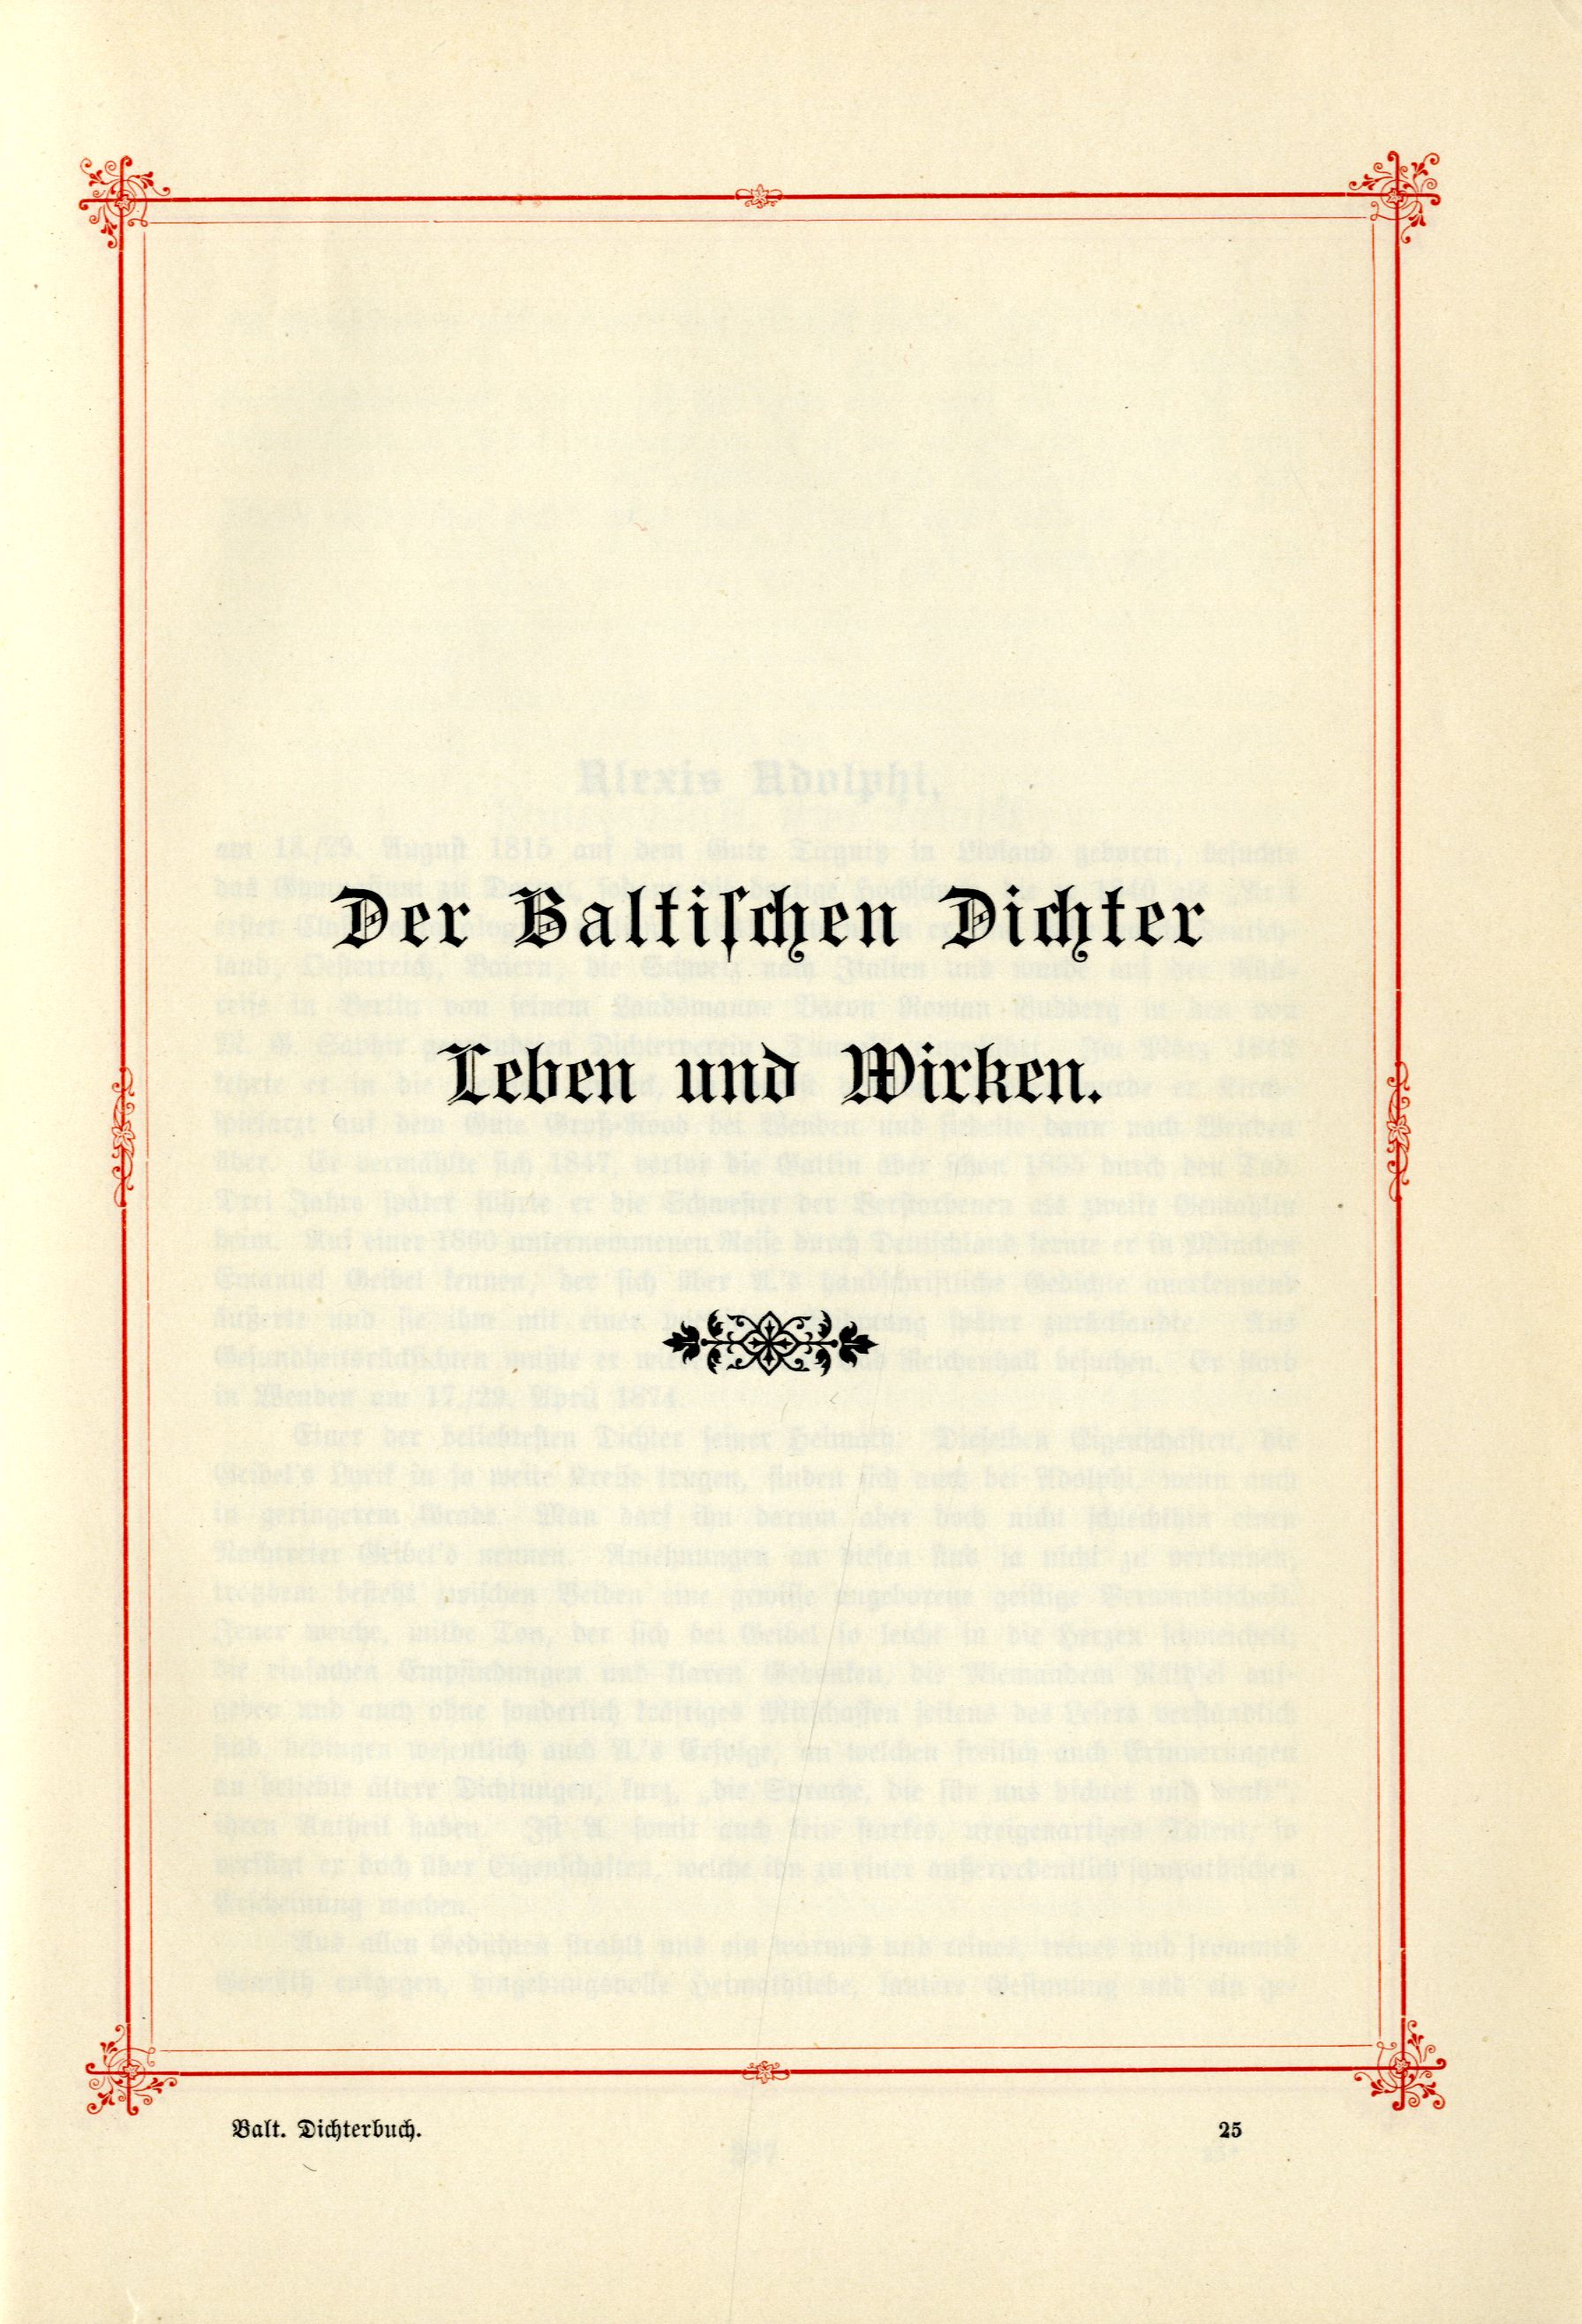 Das Baltische Dichterbuch (1895) | 431. (385) Main body of text